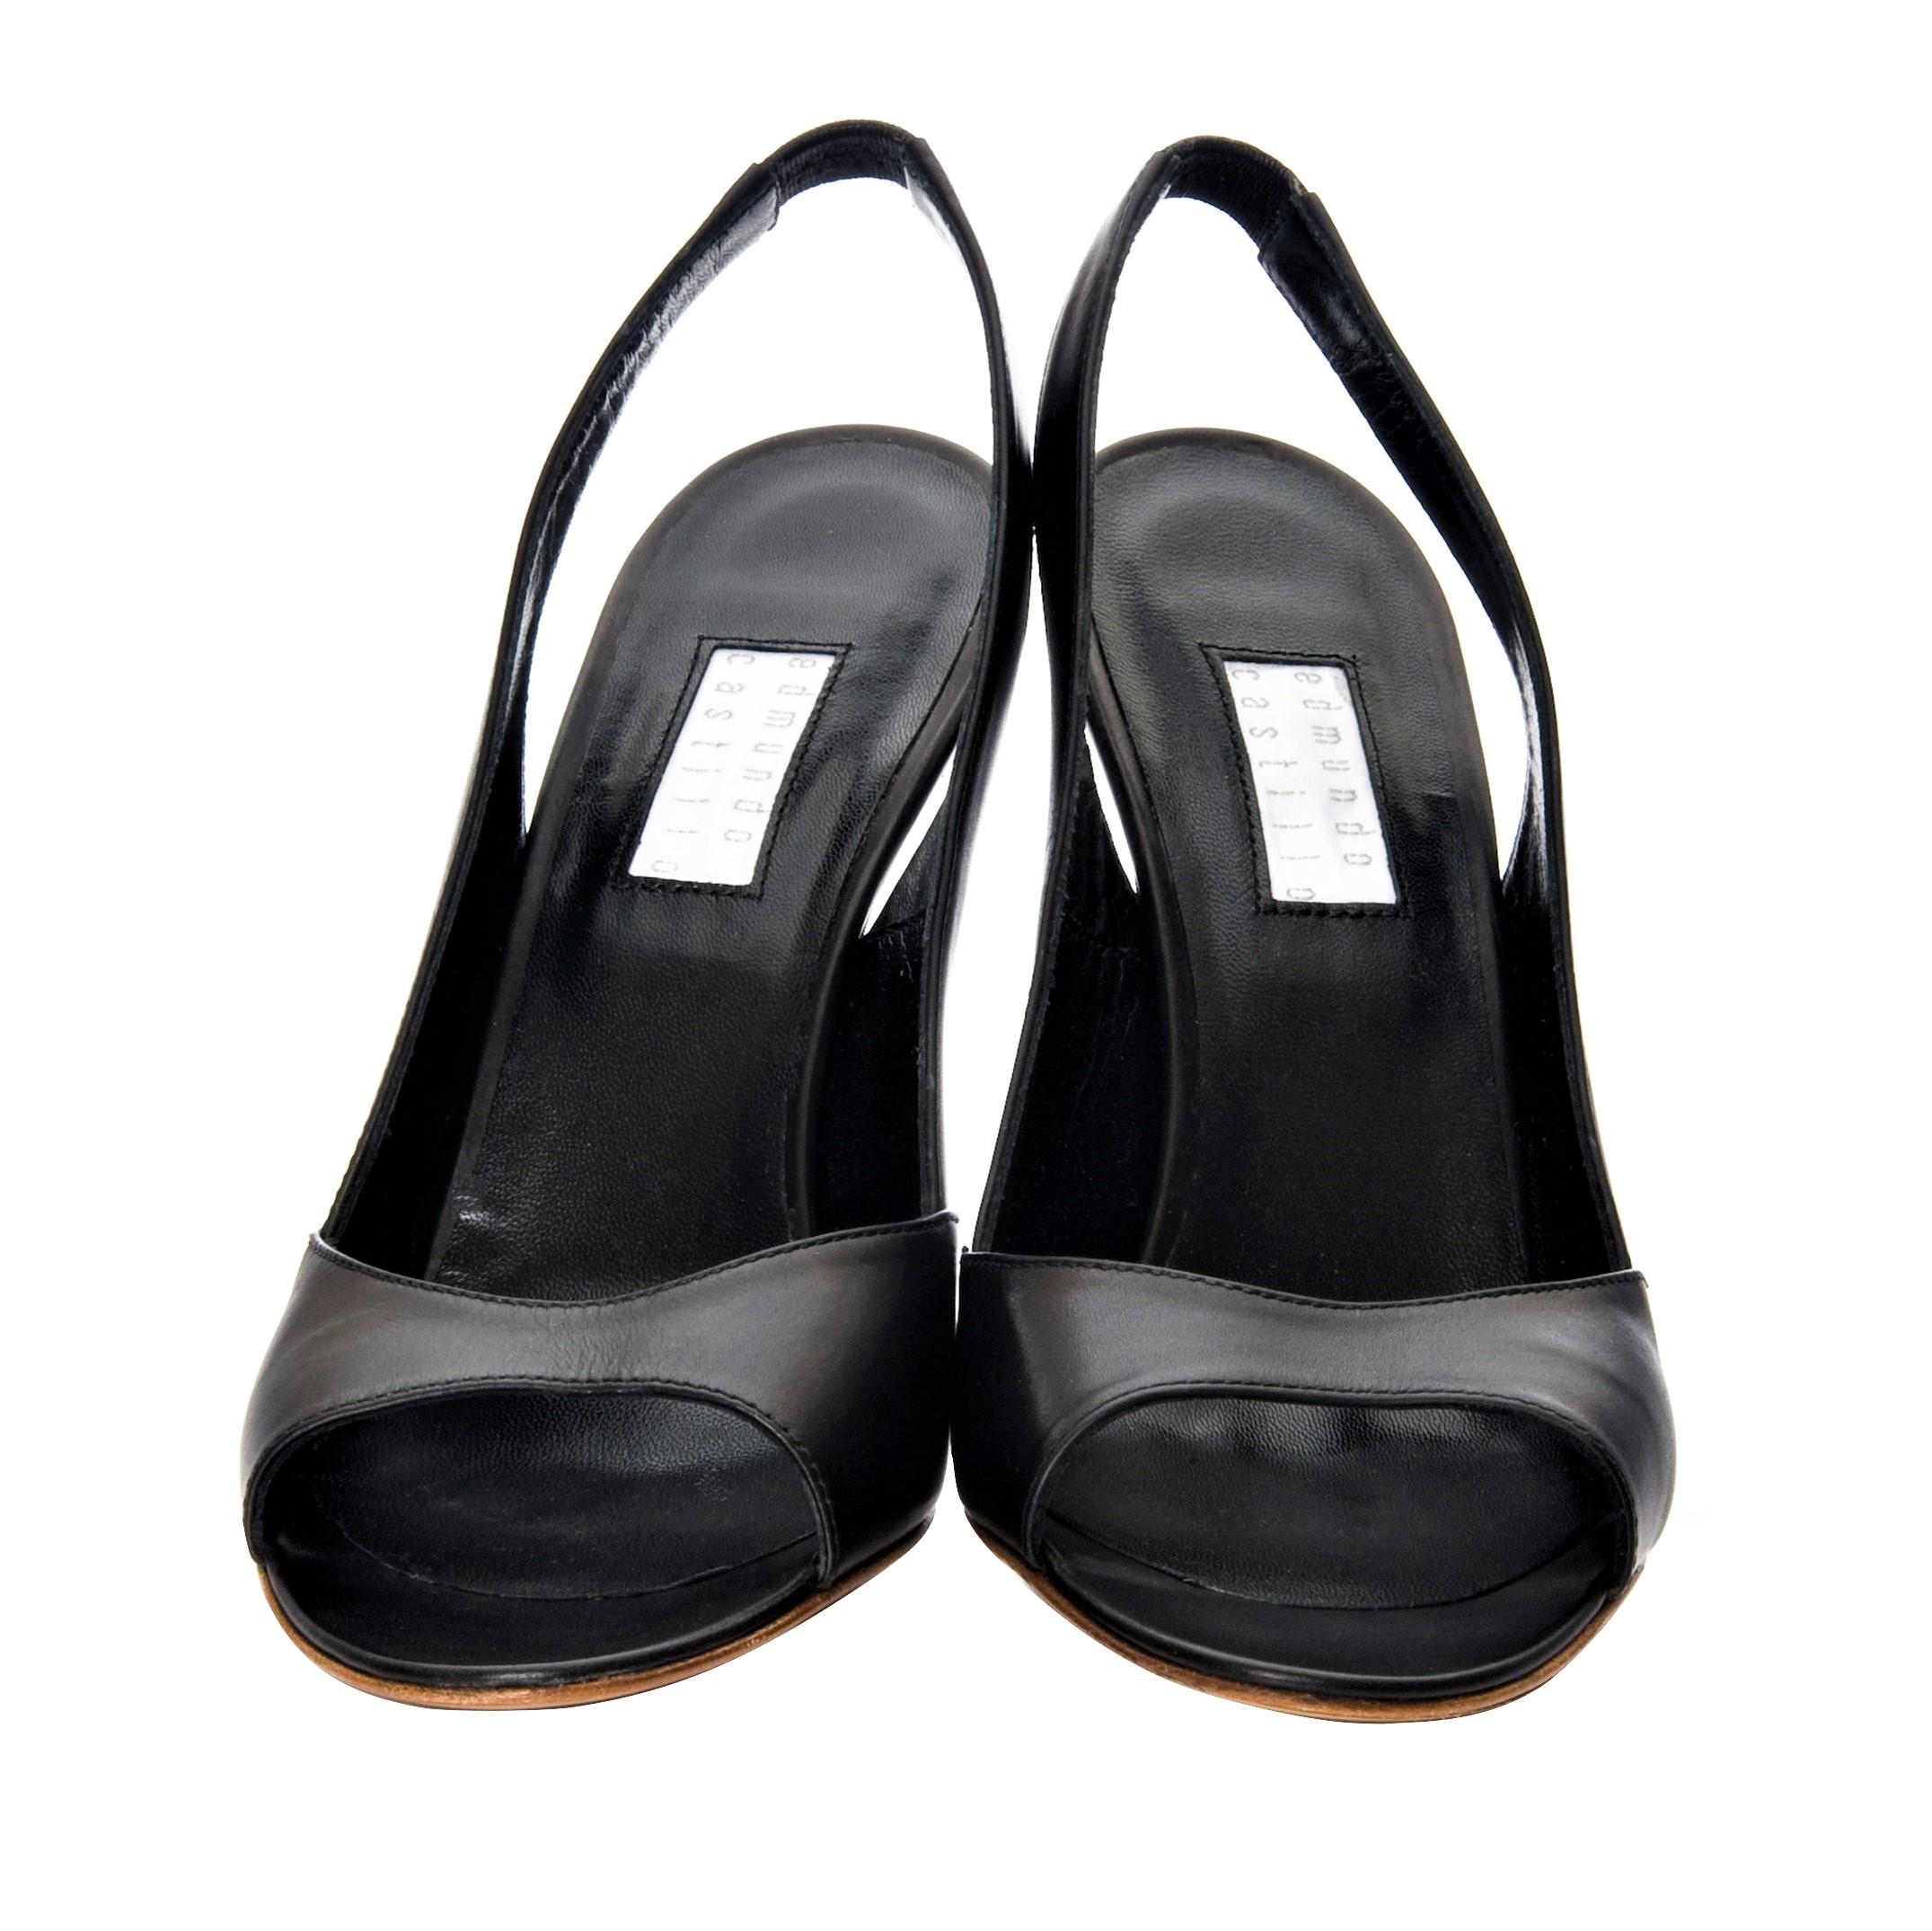 New Edmundo Castillo Black Leather Sling Heels 6.5 2